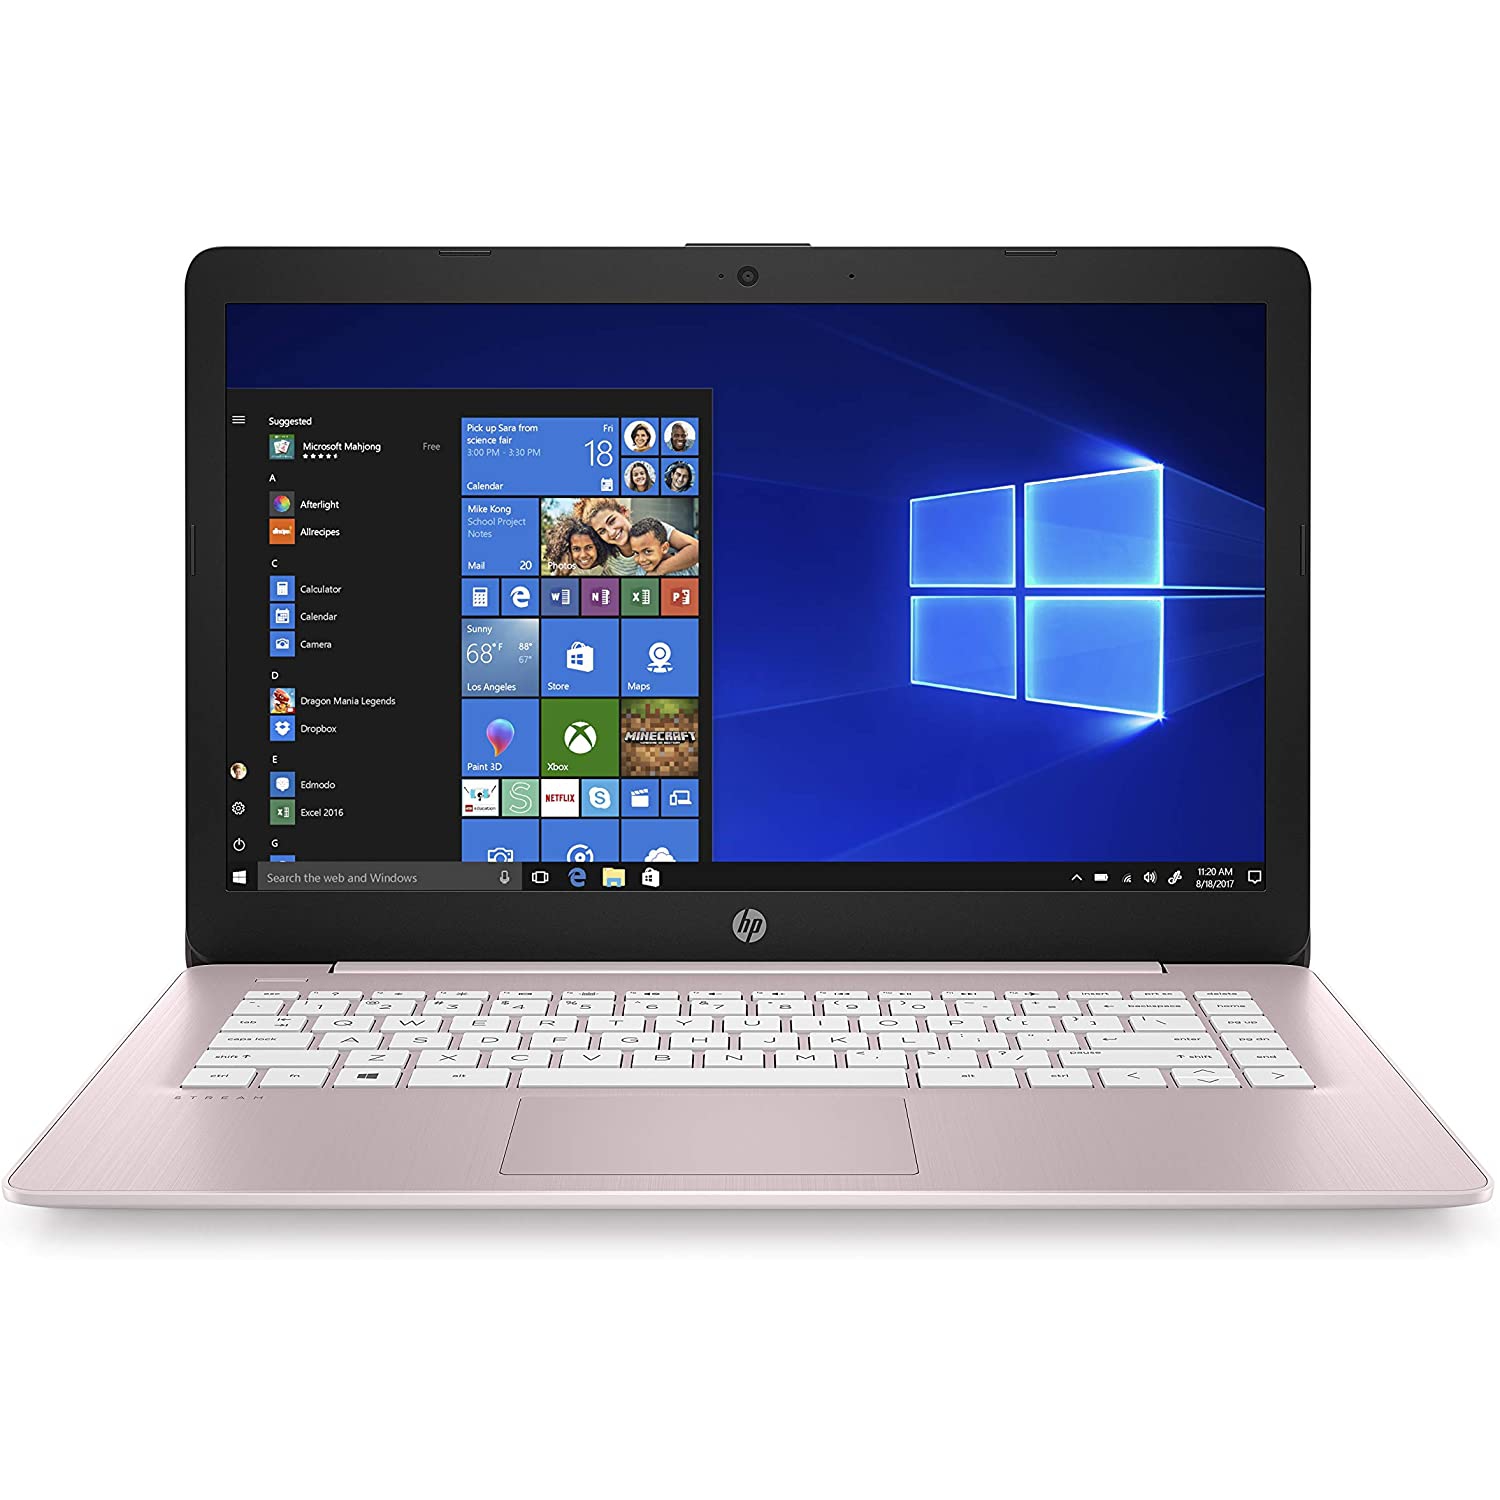 HP Stream 14" Laptop PC - Intel Celeron N4020, 4GB RAM, 64GB eMMC, Rose Pink, Windows 10 (S Mode)